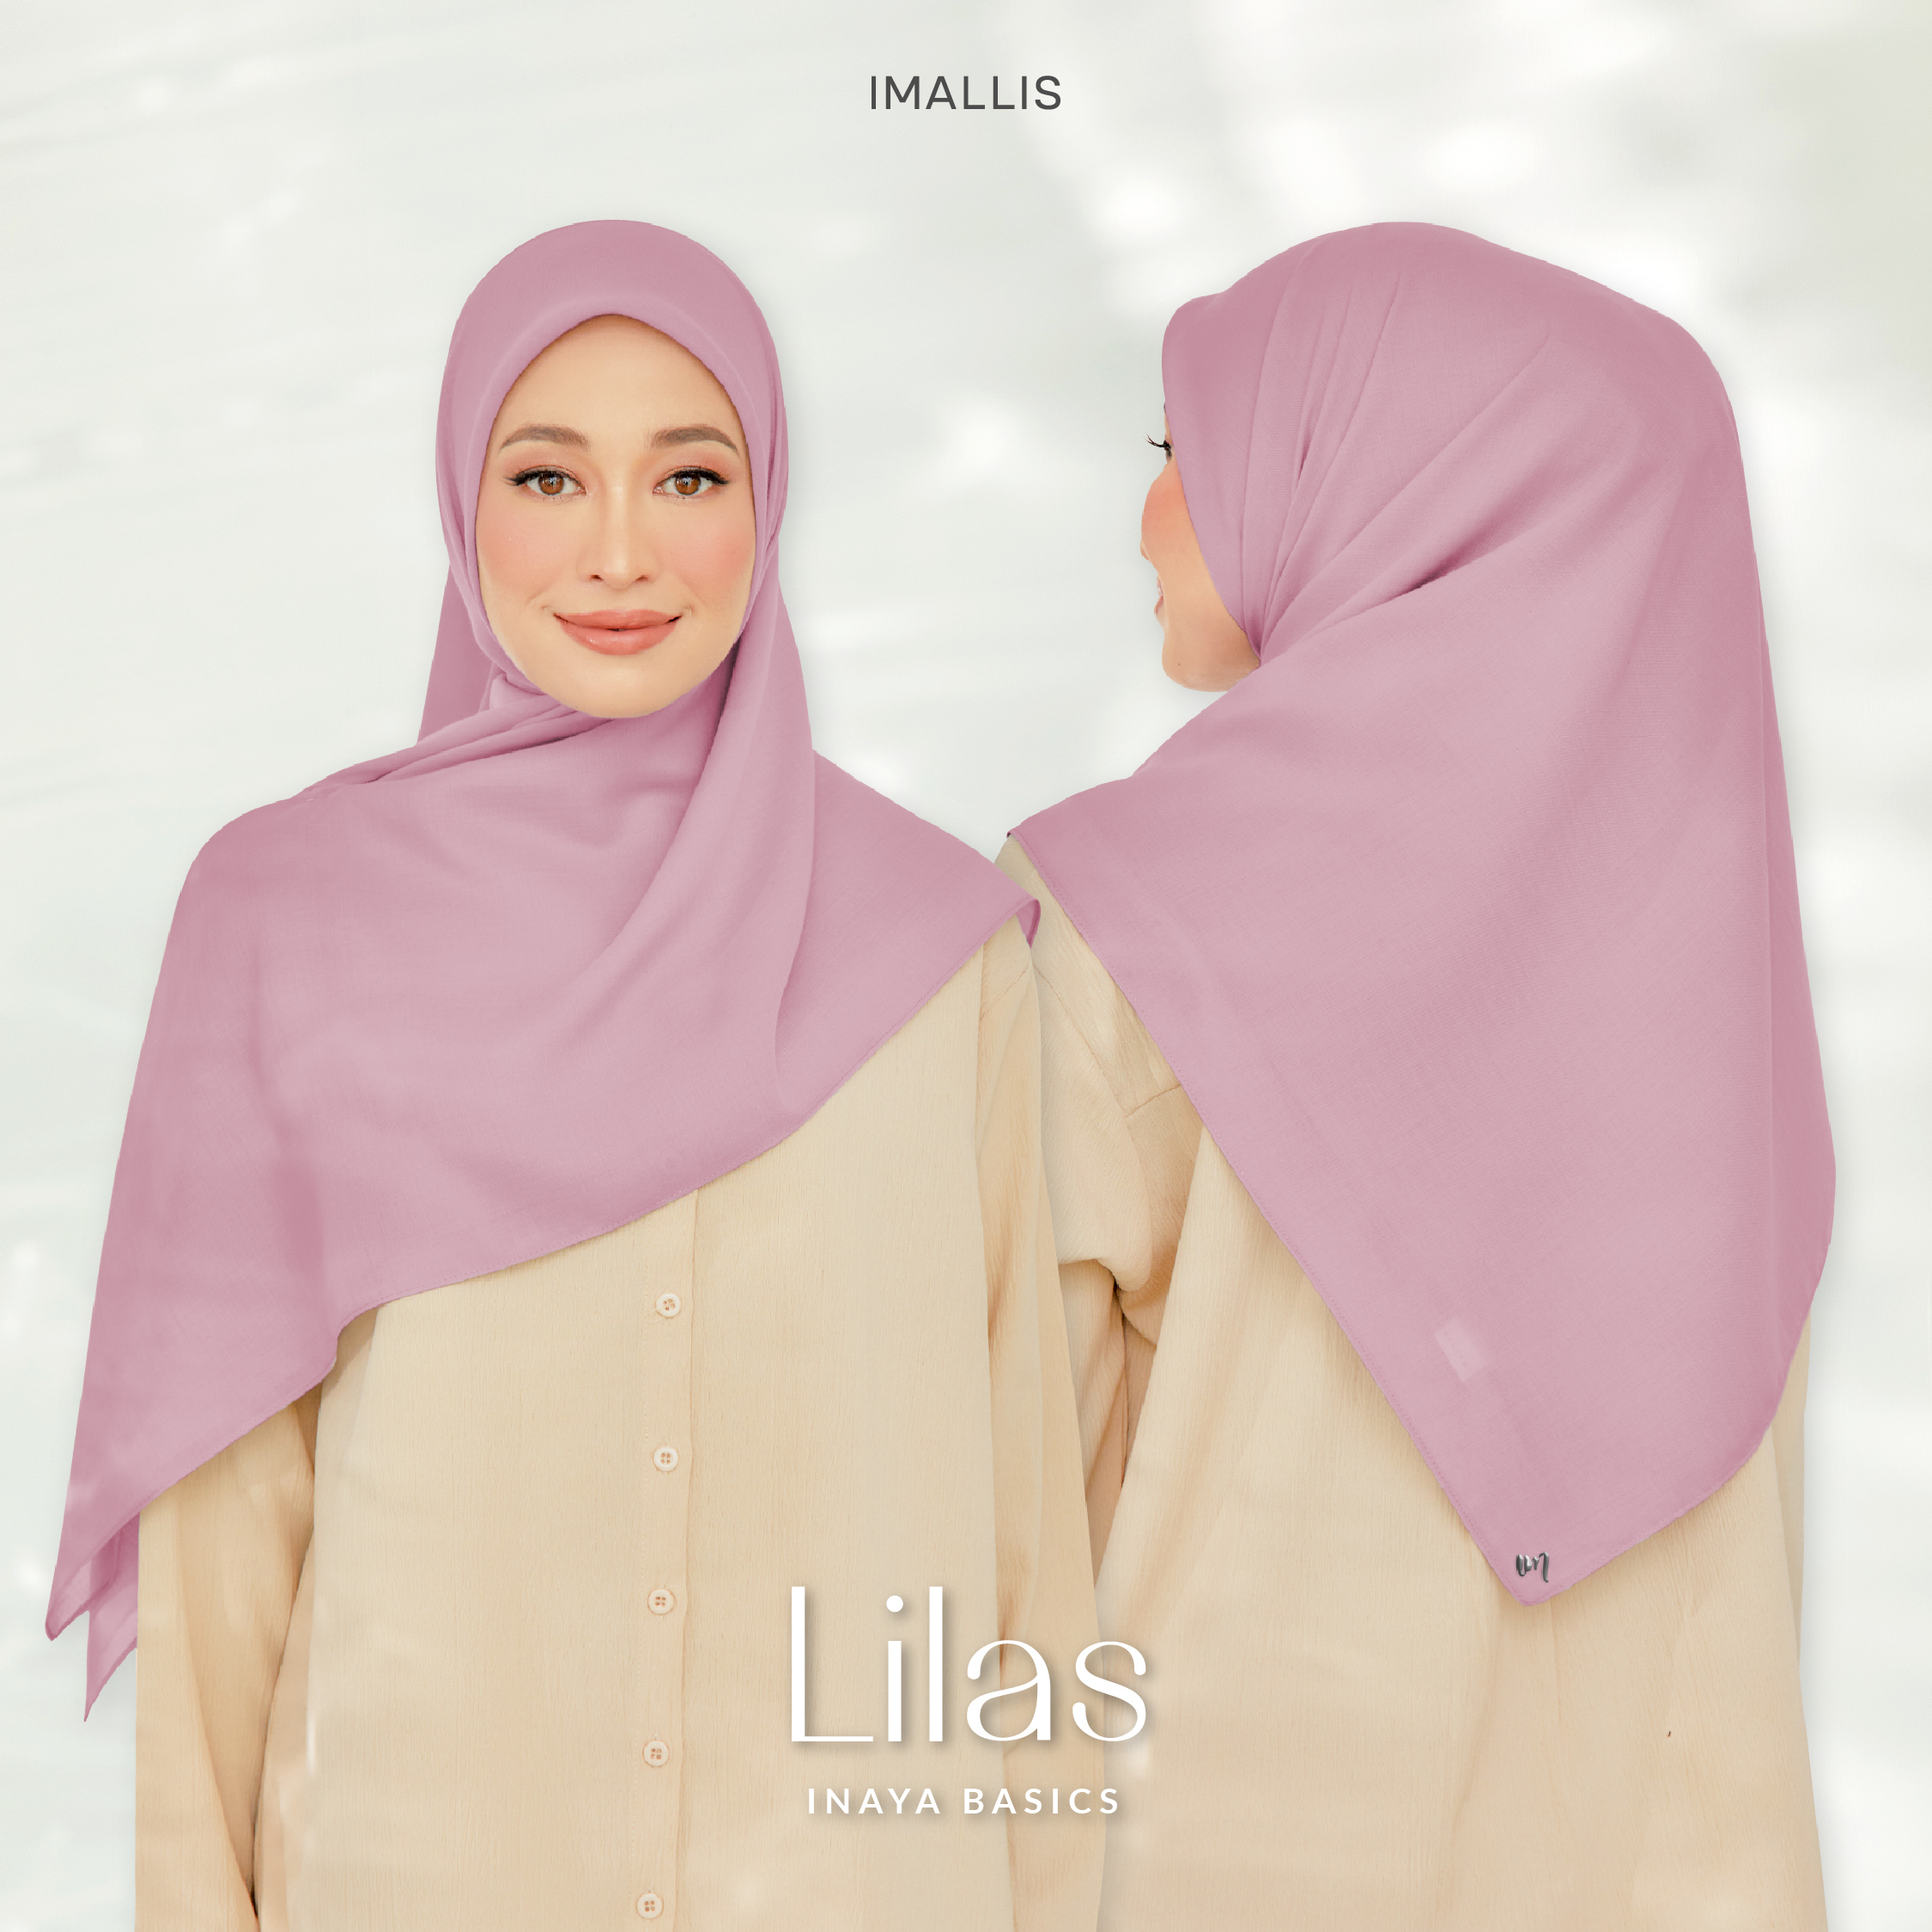 Inaya Basics - Lilas-01